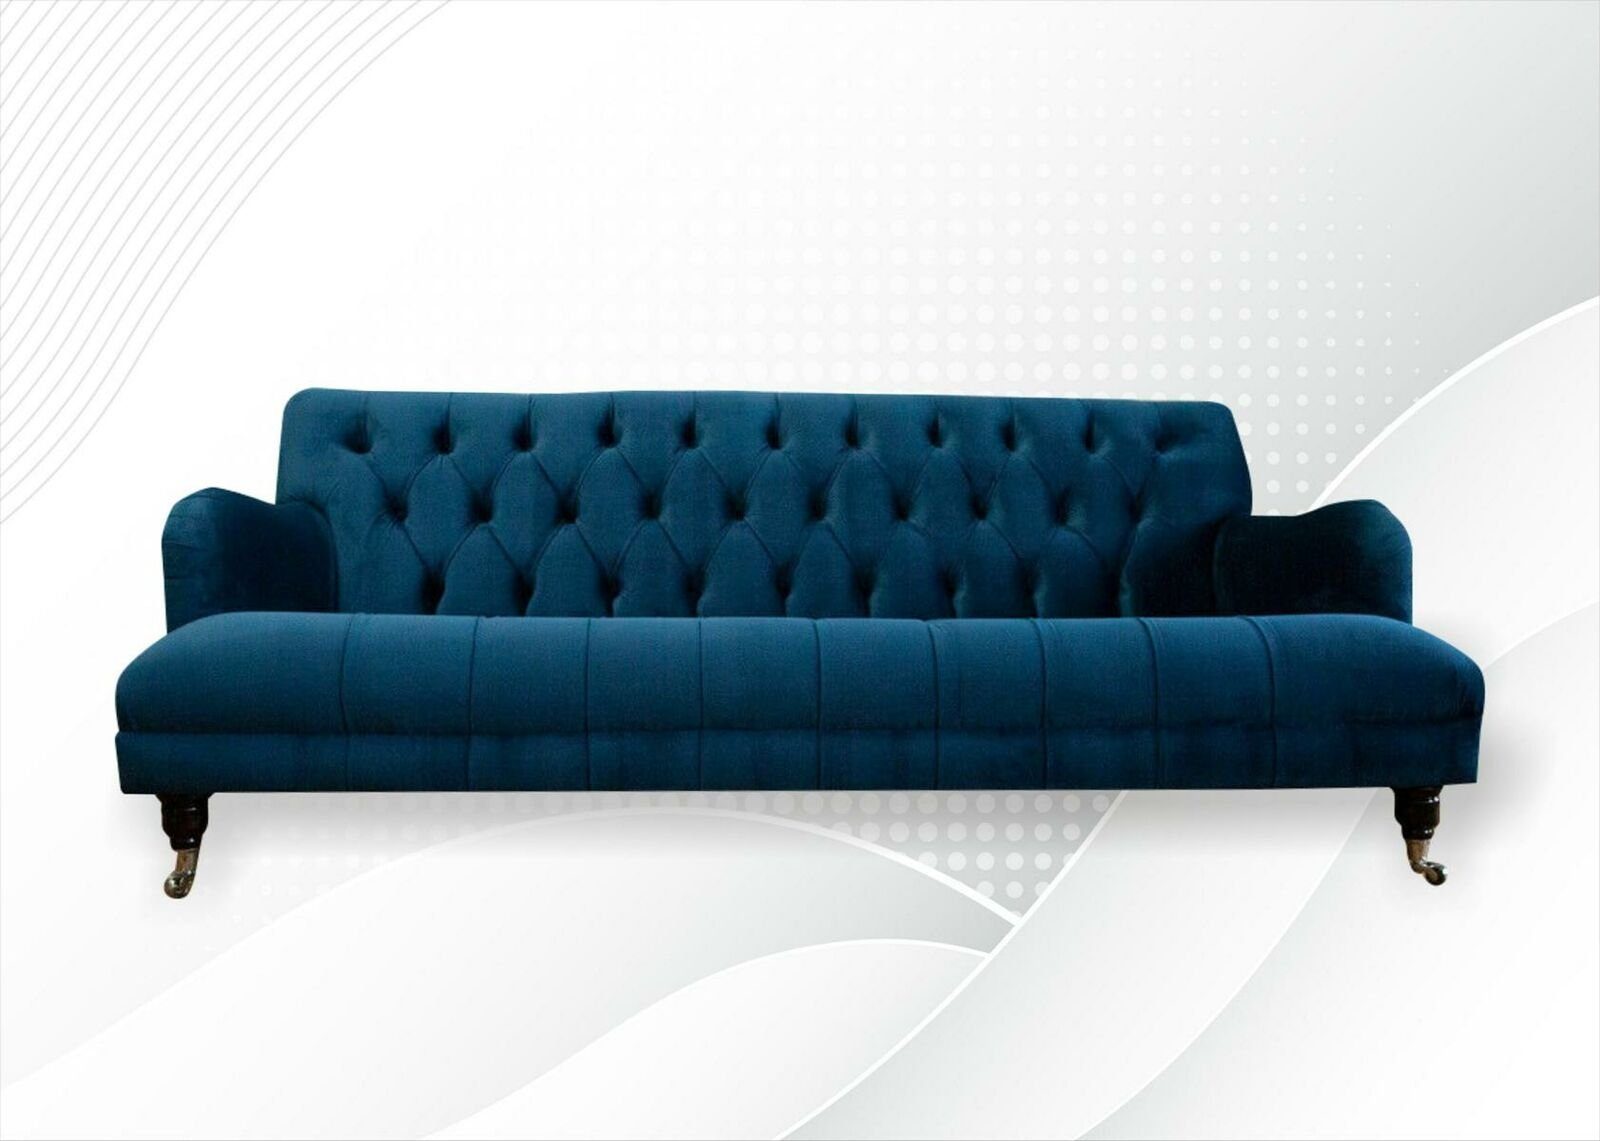 JVmoebel Chesterfield-Sofa, Chesterfield Blau Textil Sofa Design Couchen Polster Sofas Neu Luxus Wohnzimmer